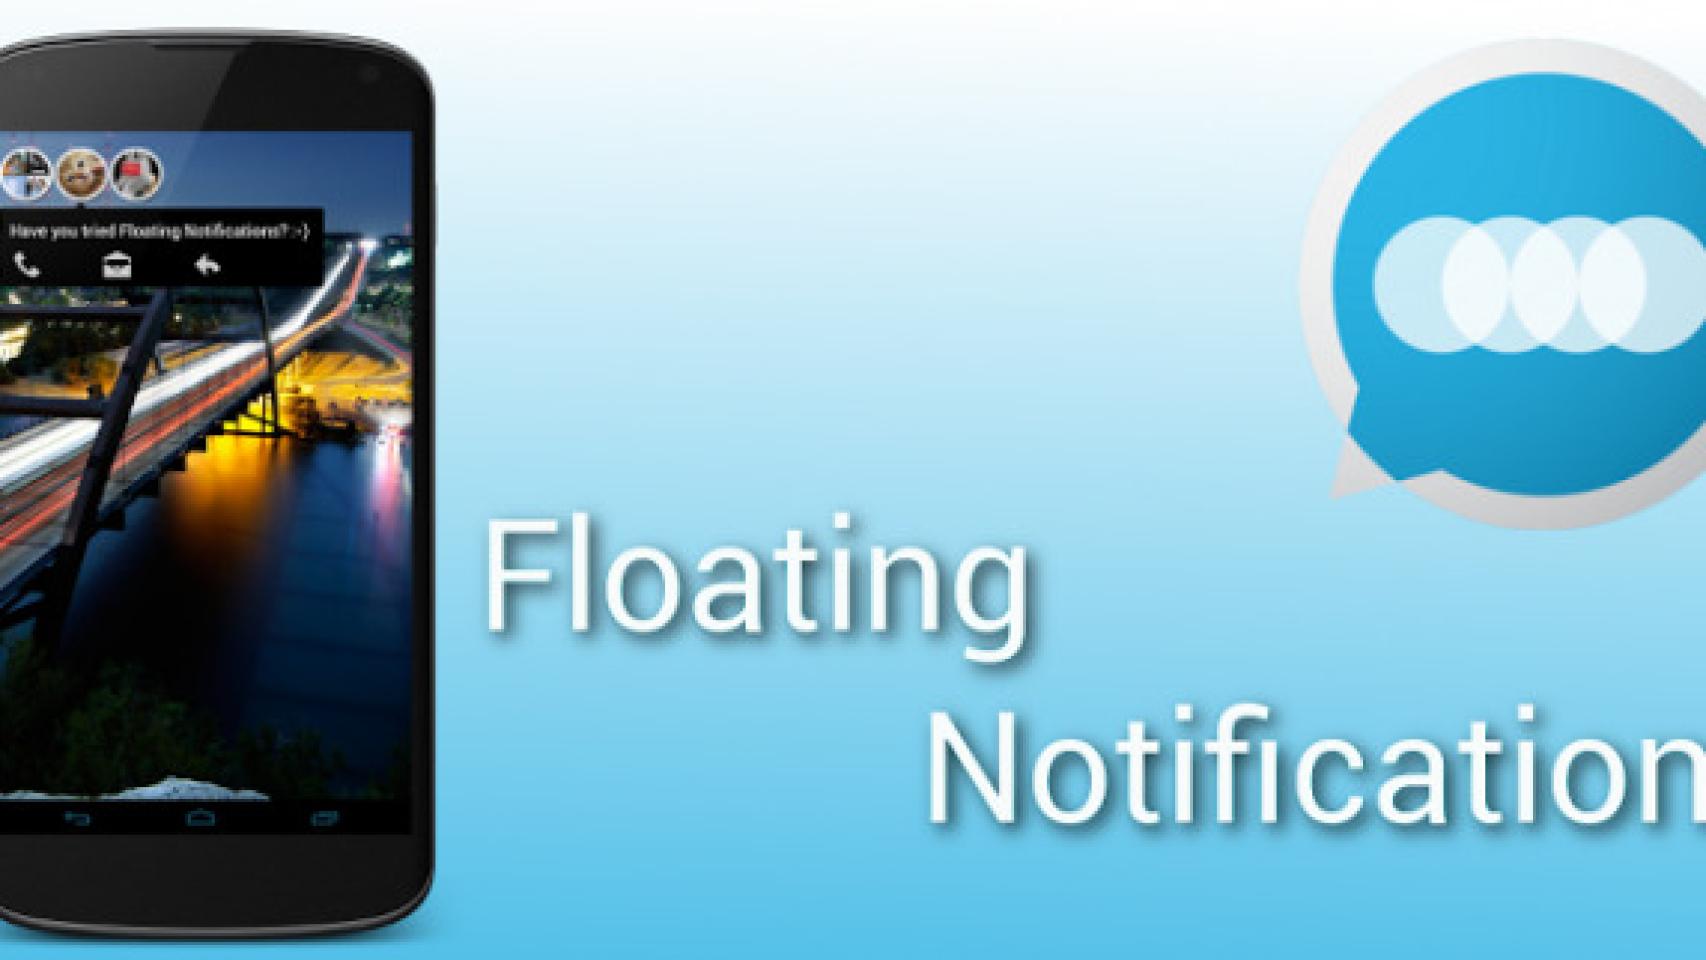 Consigue ya las notificaciones flotantes en tu Android